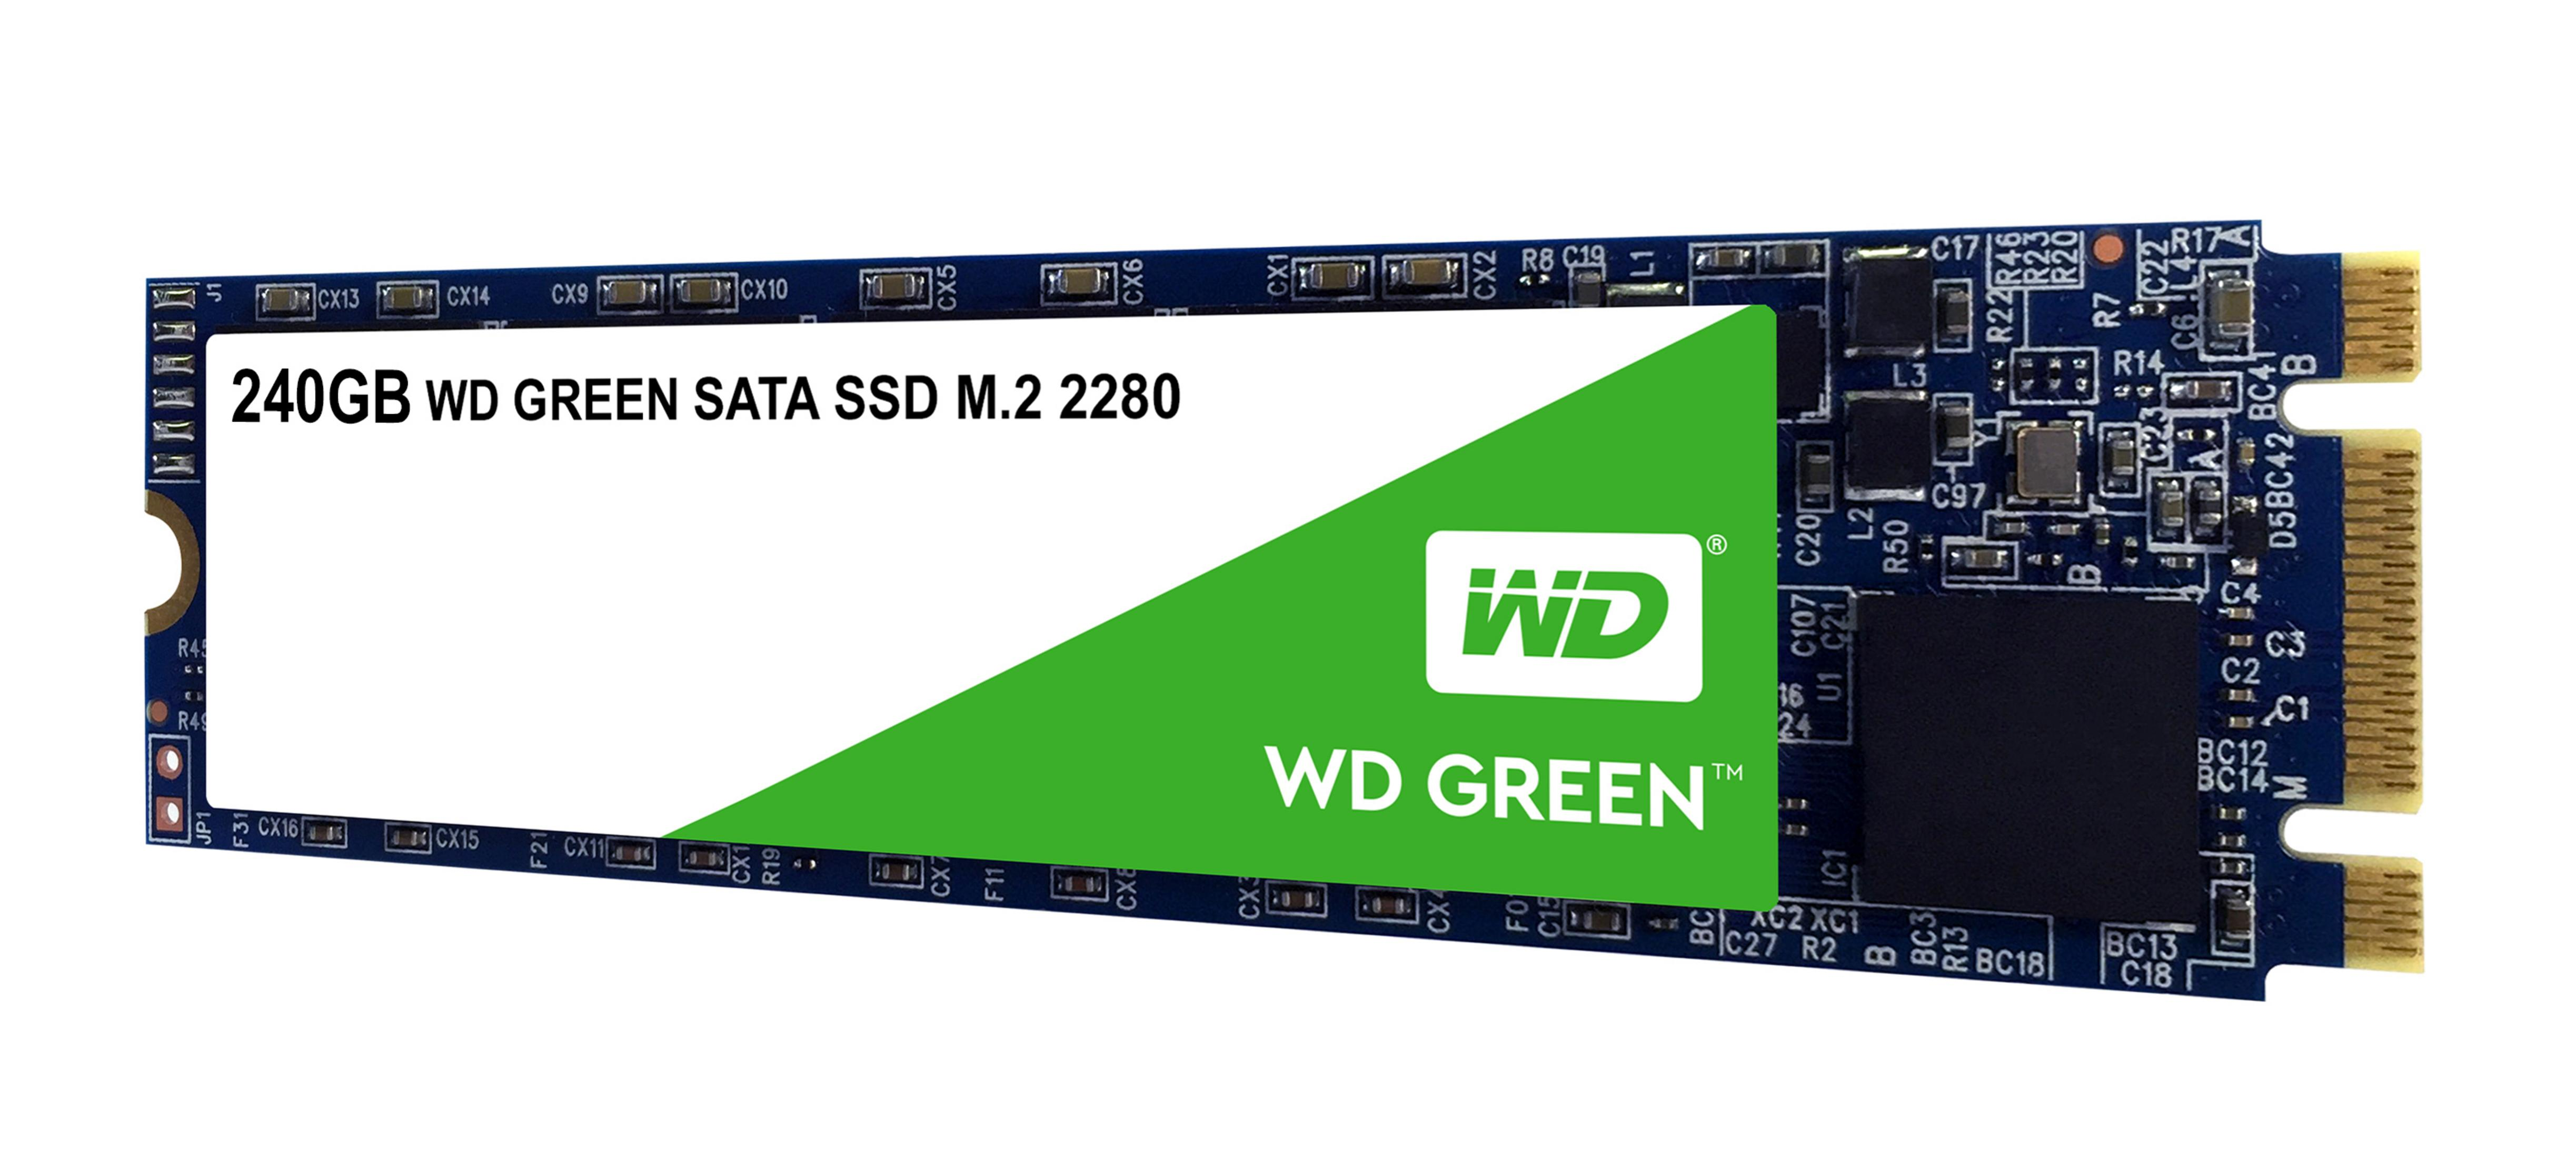 GB, 240 WESTERN intern DIGITAL SSD, Green,